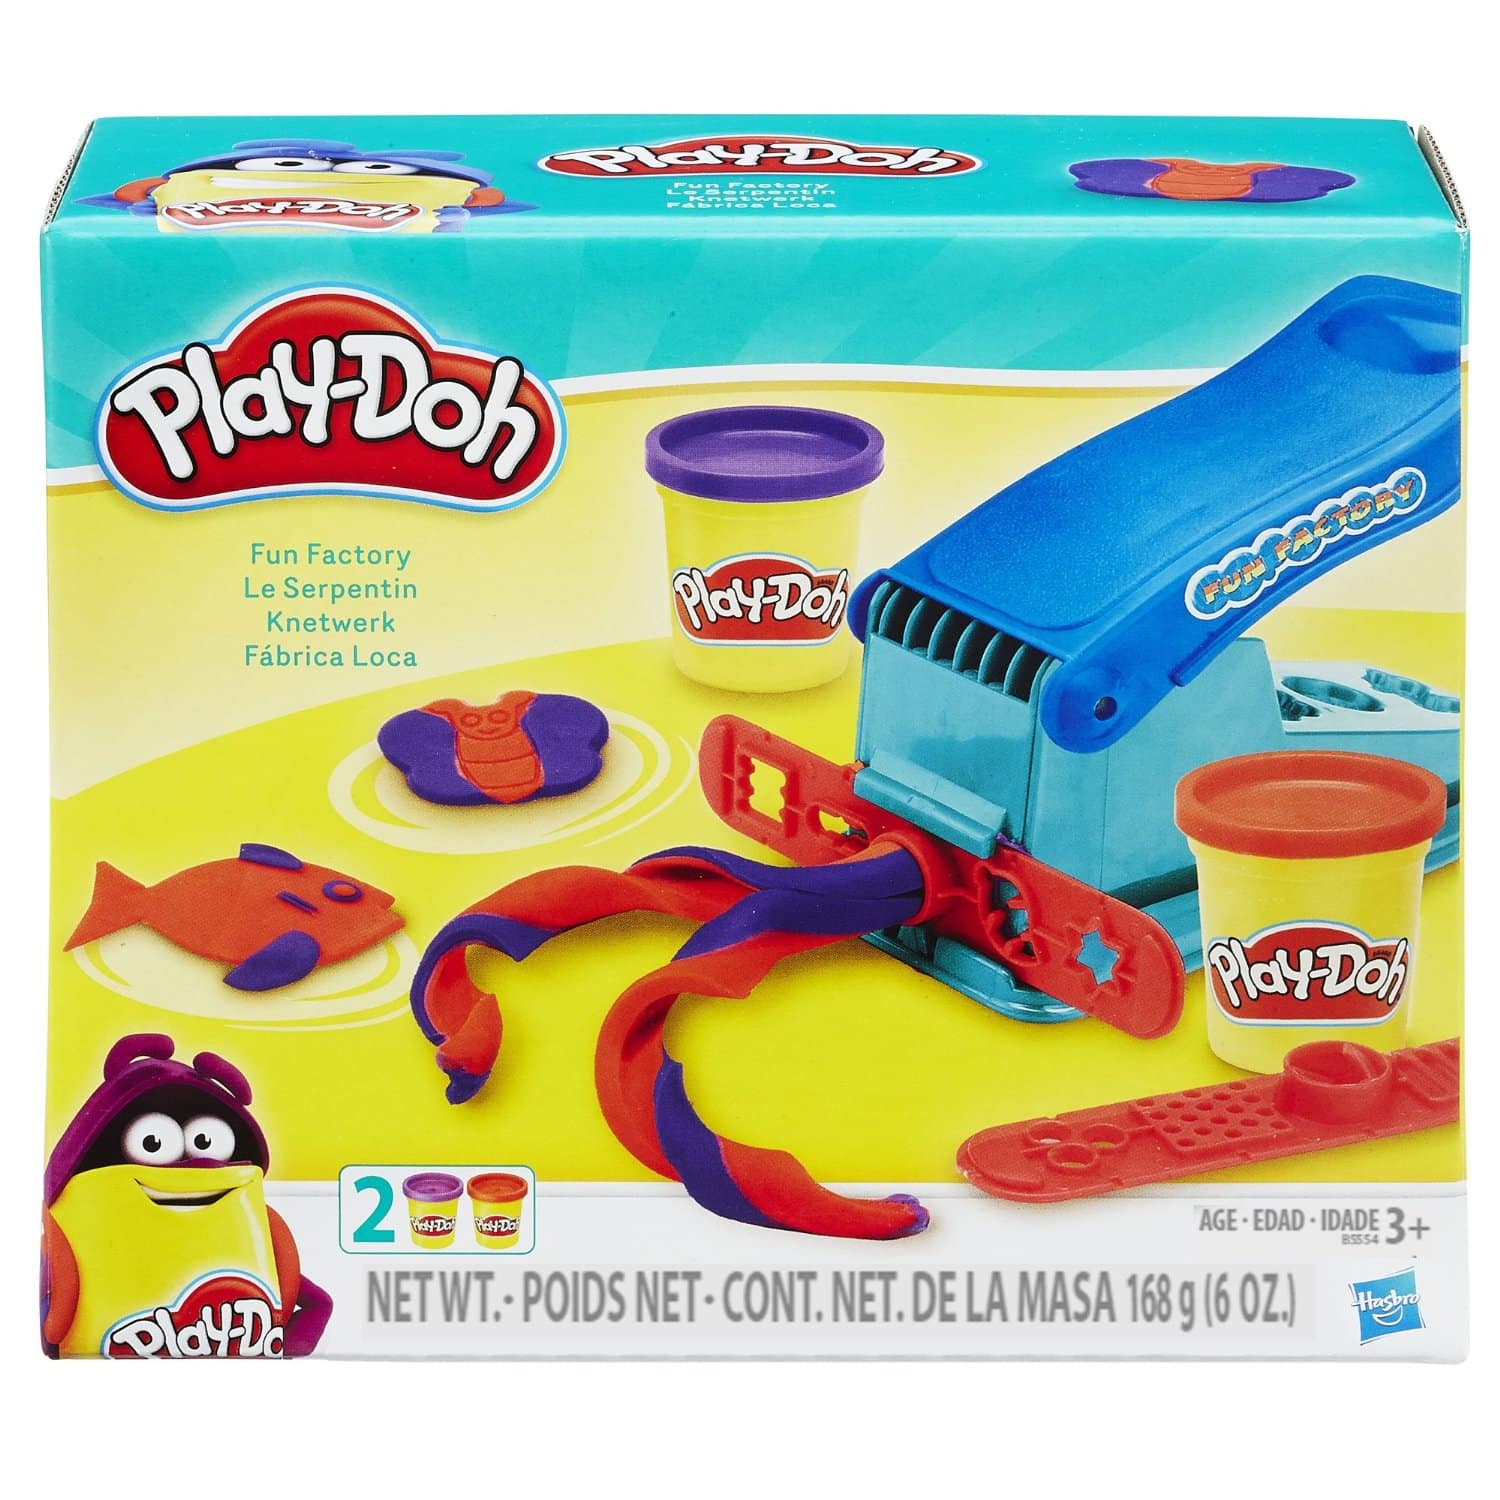 LIGHTNING DEAL ALERT! Play-Doh Fun Factory Set – 52% off!